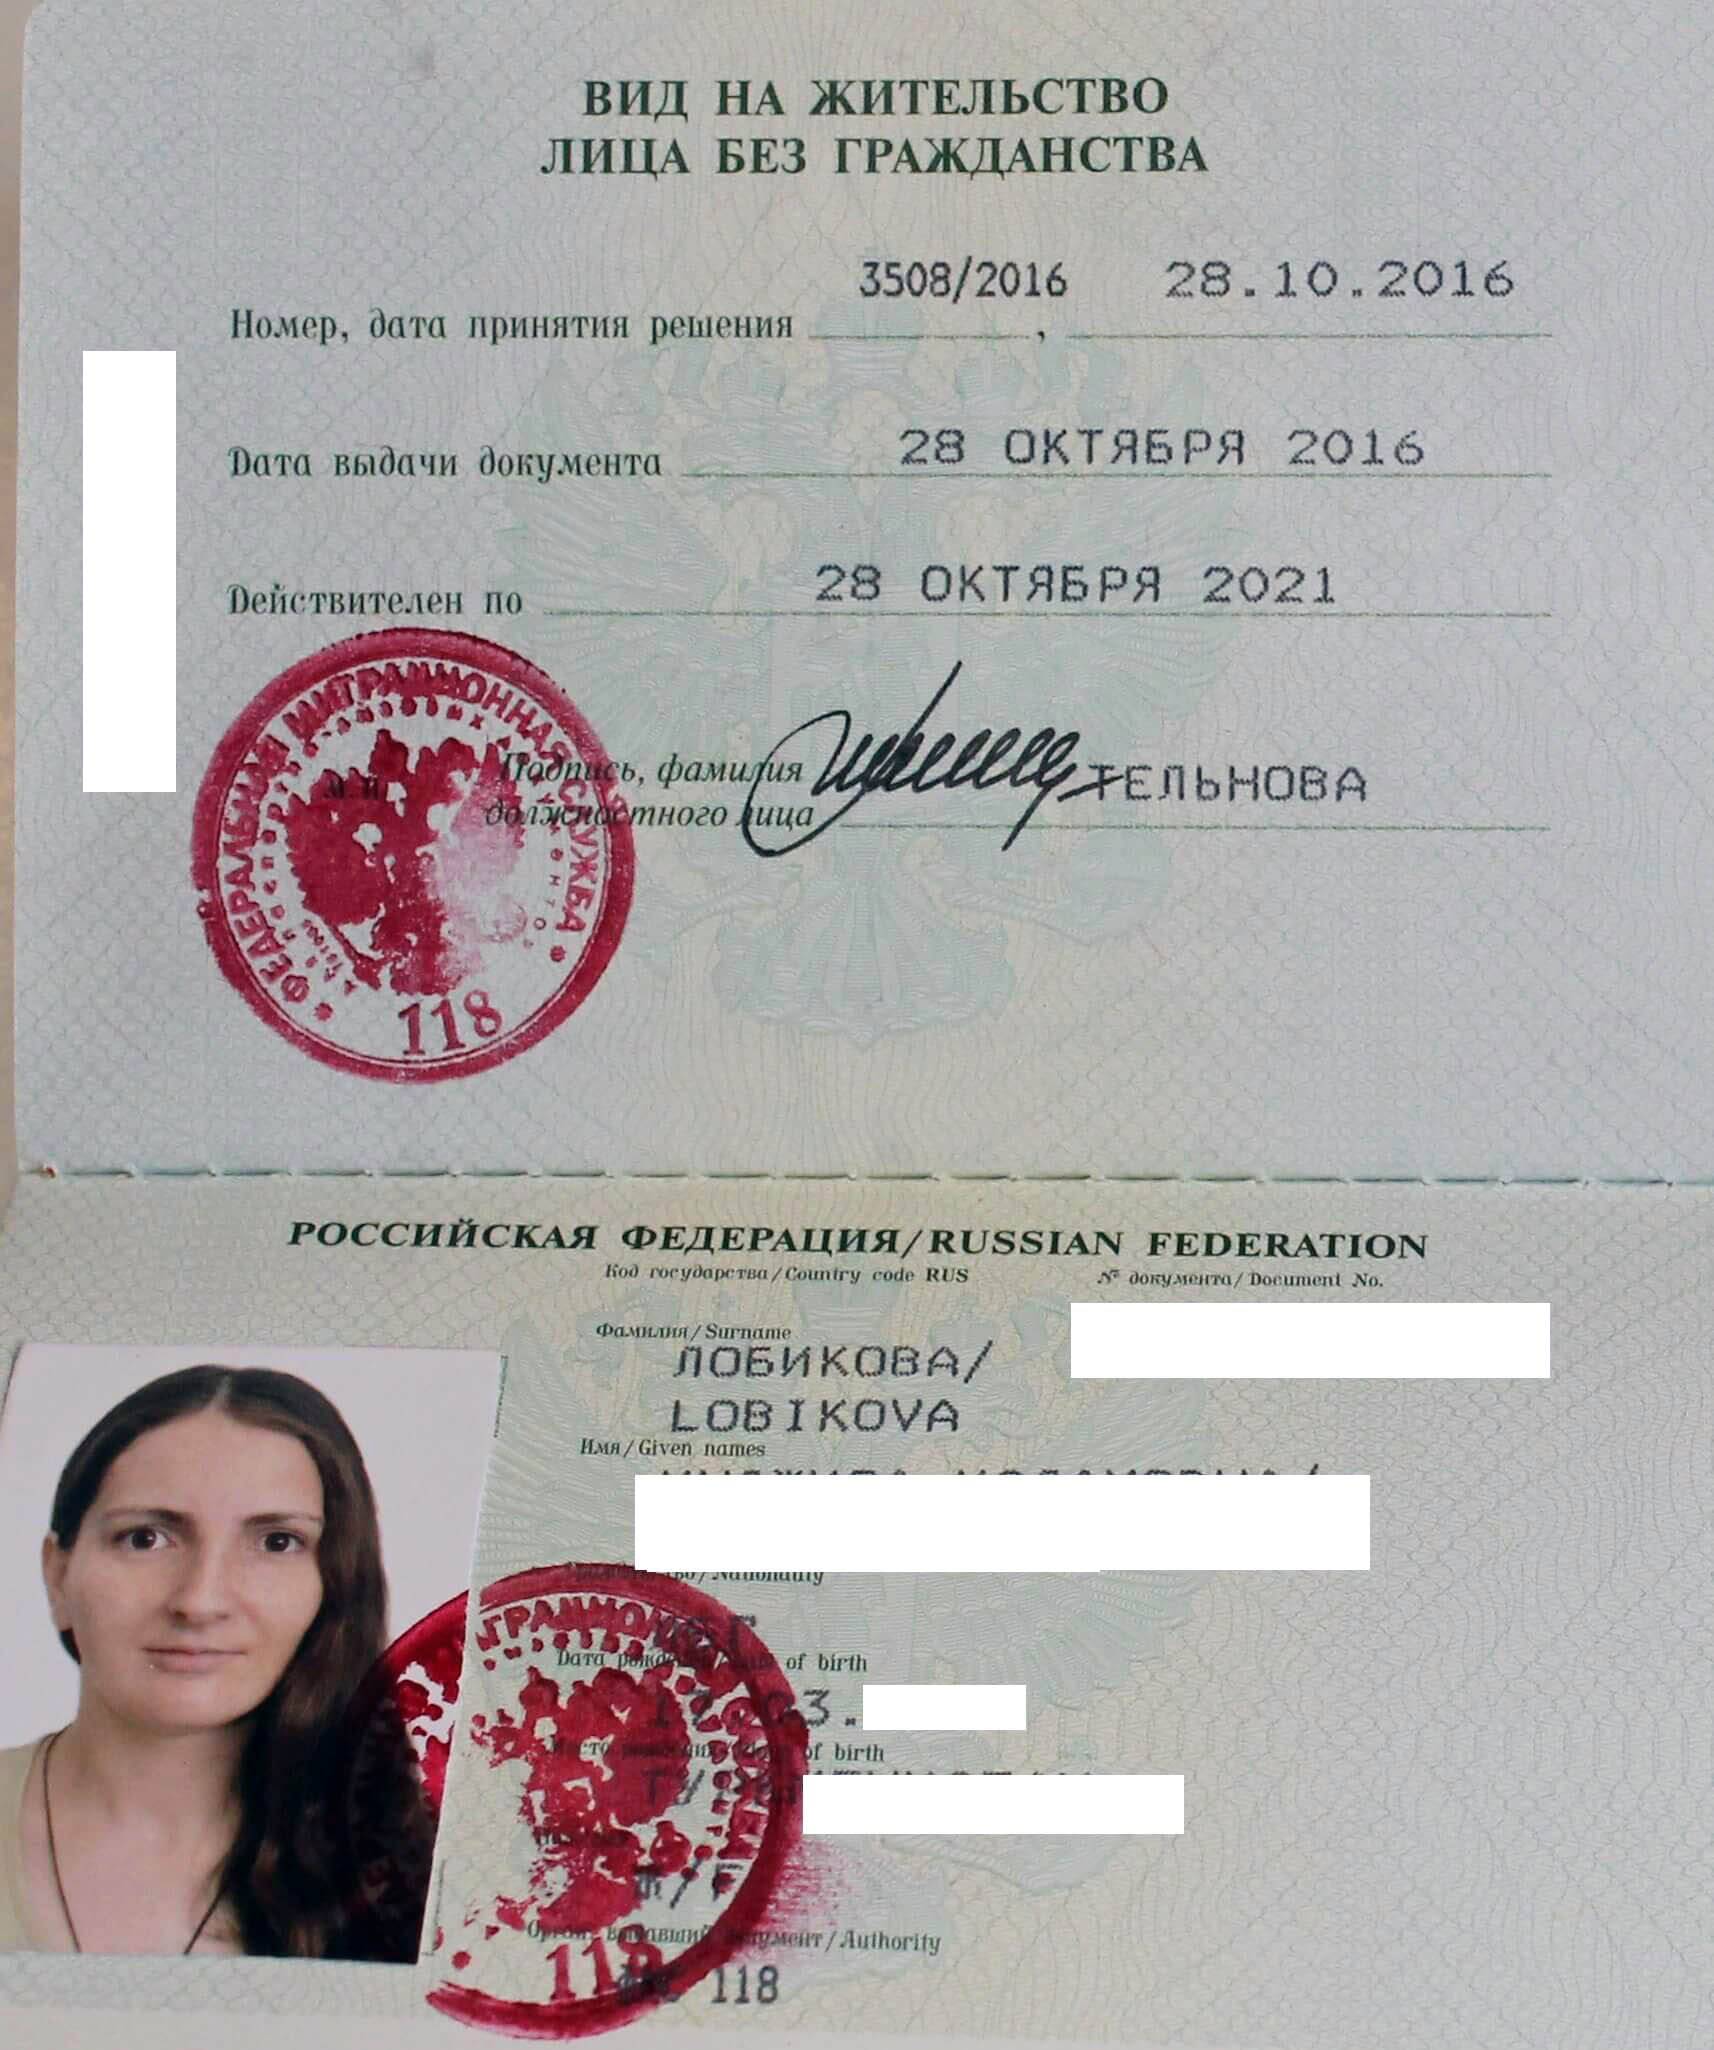 Как получить внж в италии - русский эмигрант как получить внж в италии россиянину: основания, необходимые документы